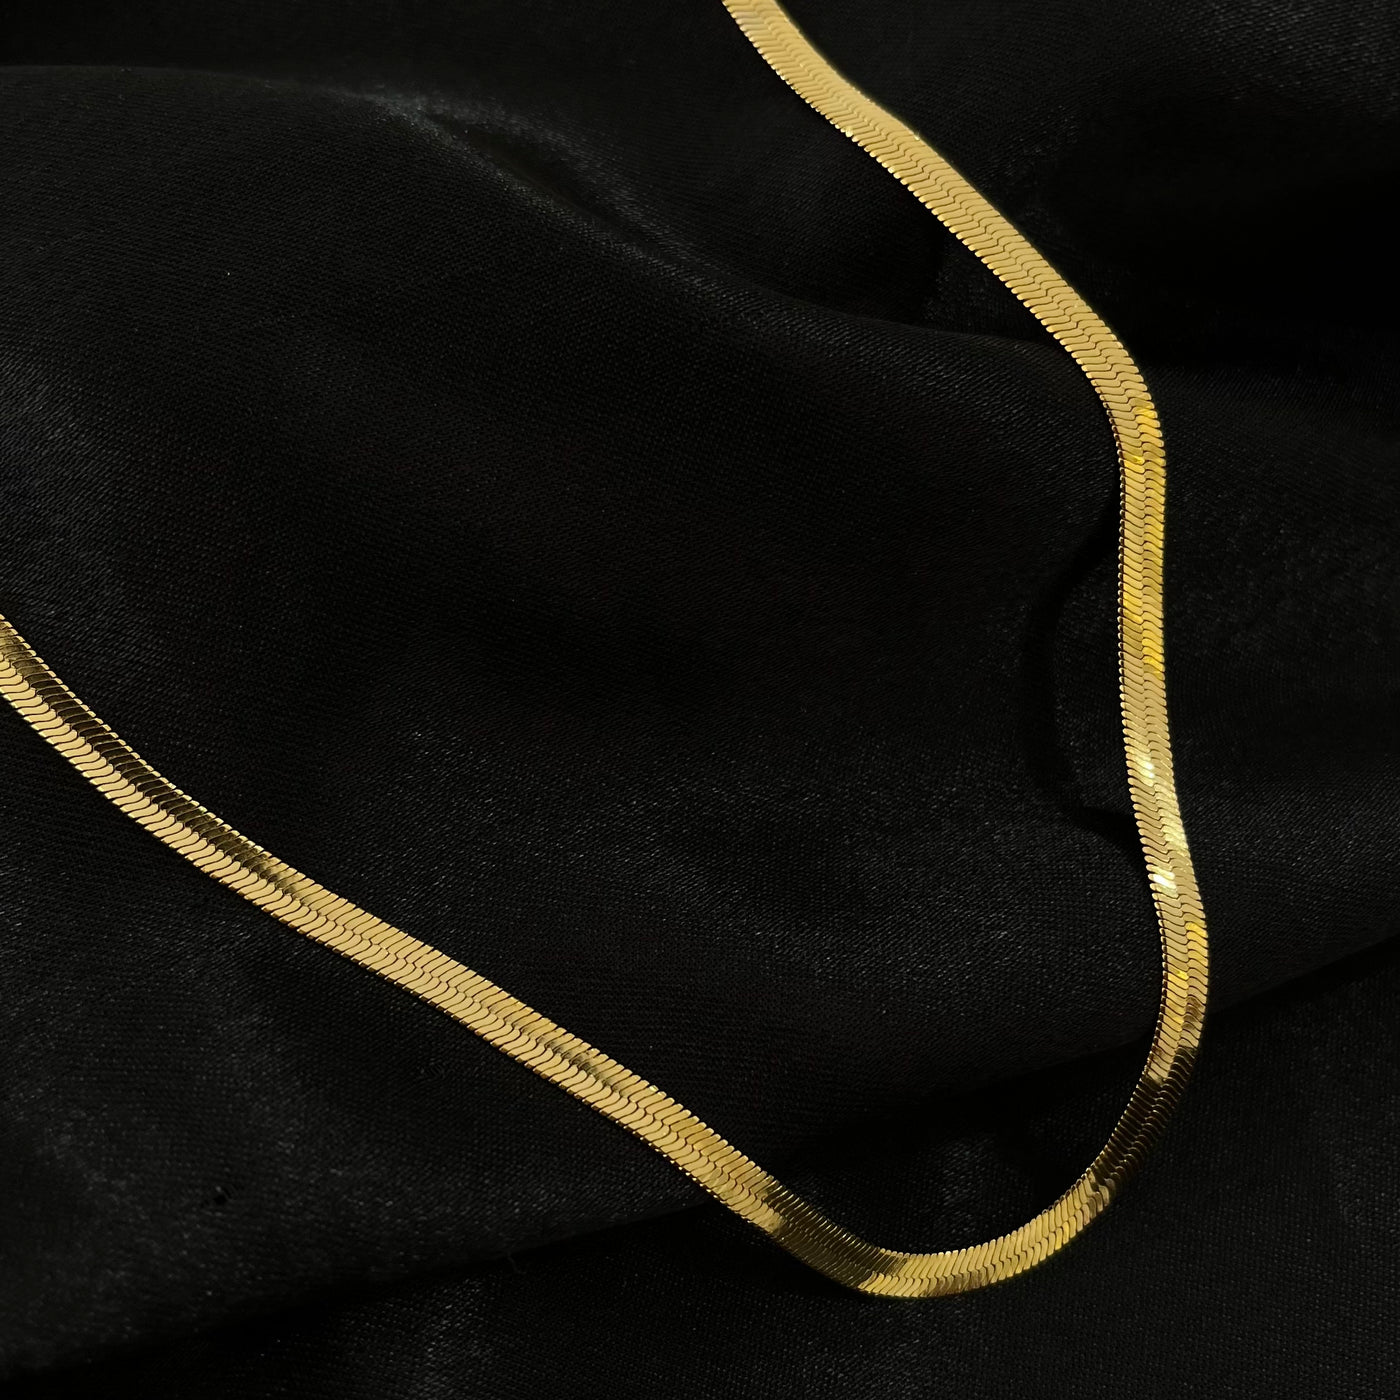 Cadena Fiorella planchada de oro laminado de 18 K.